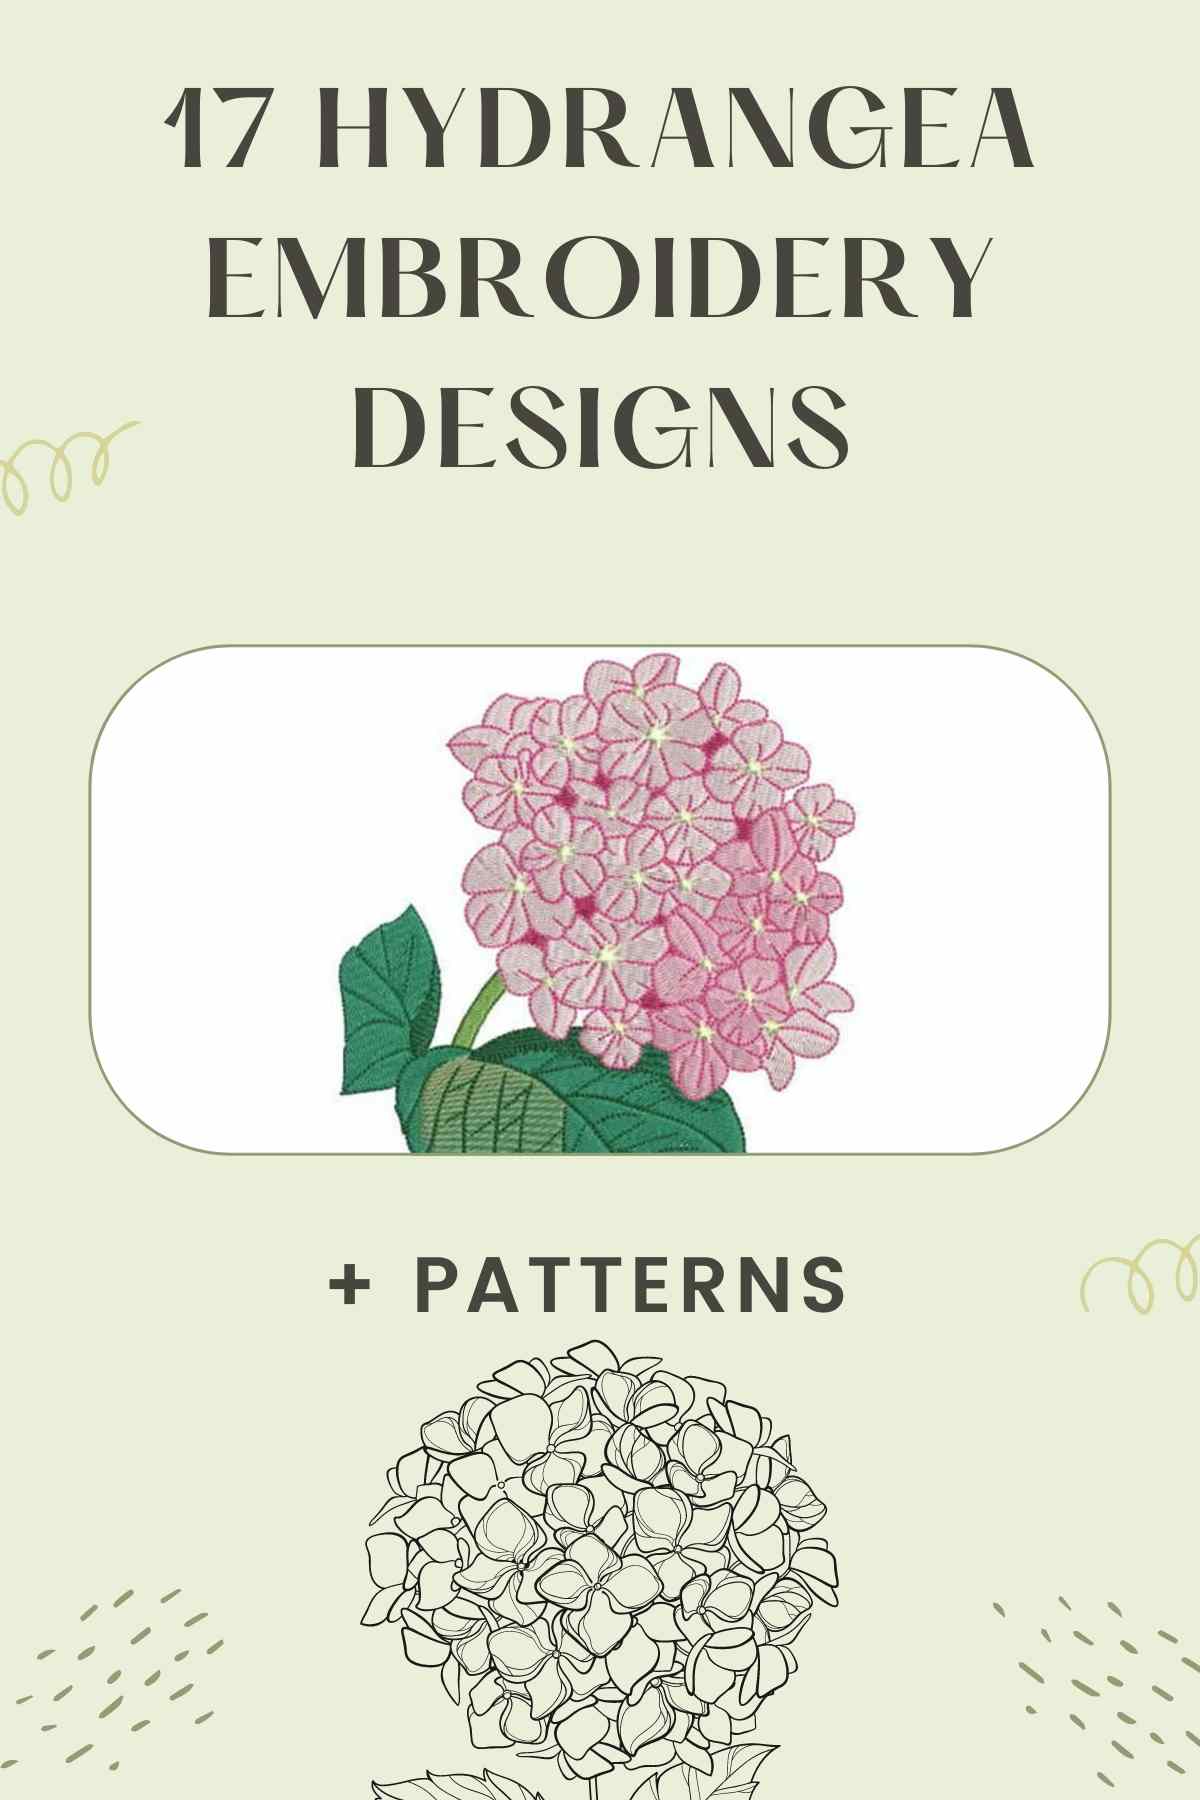 Hydrangea Embroidery Designs